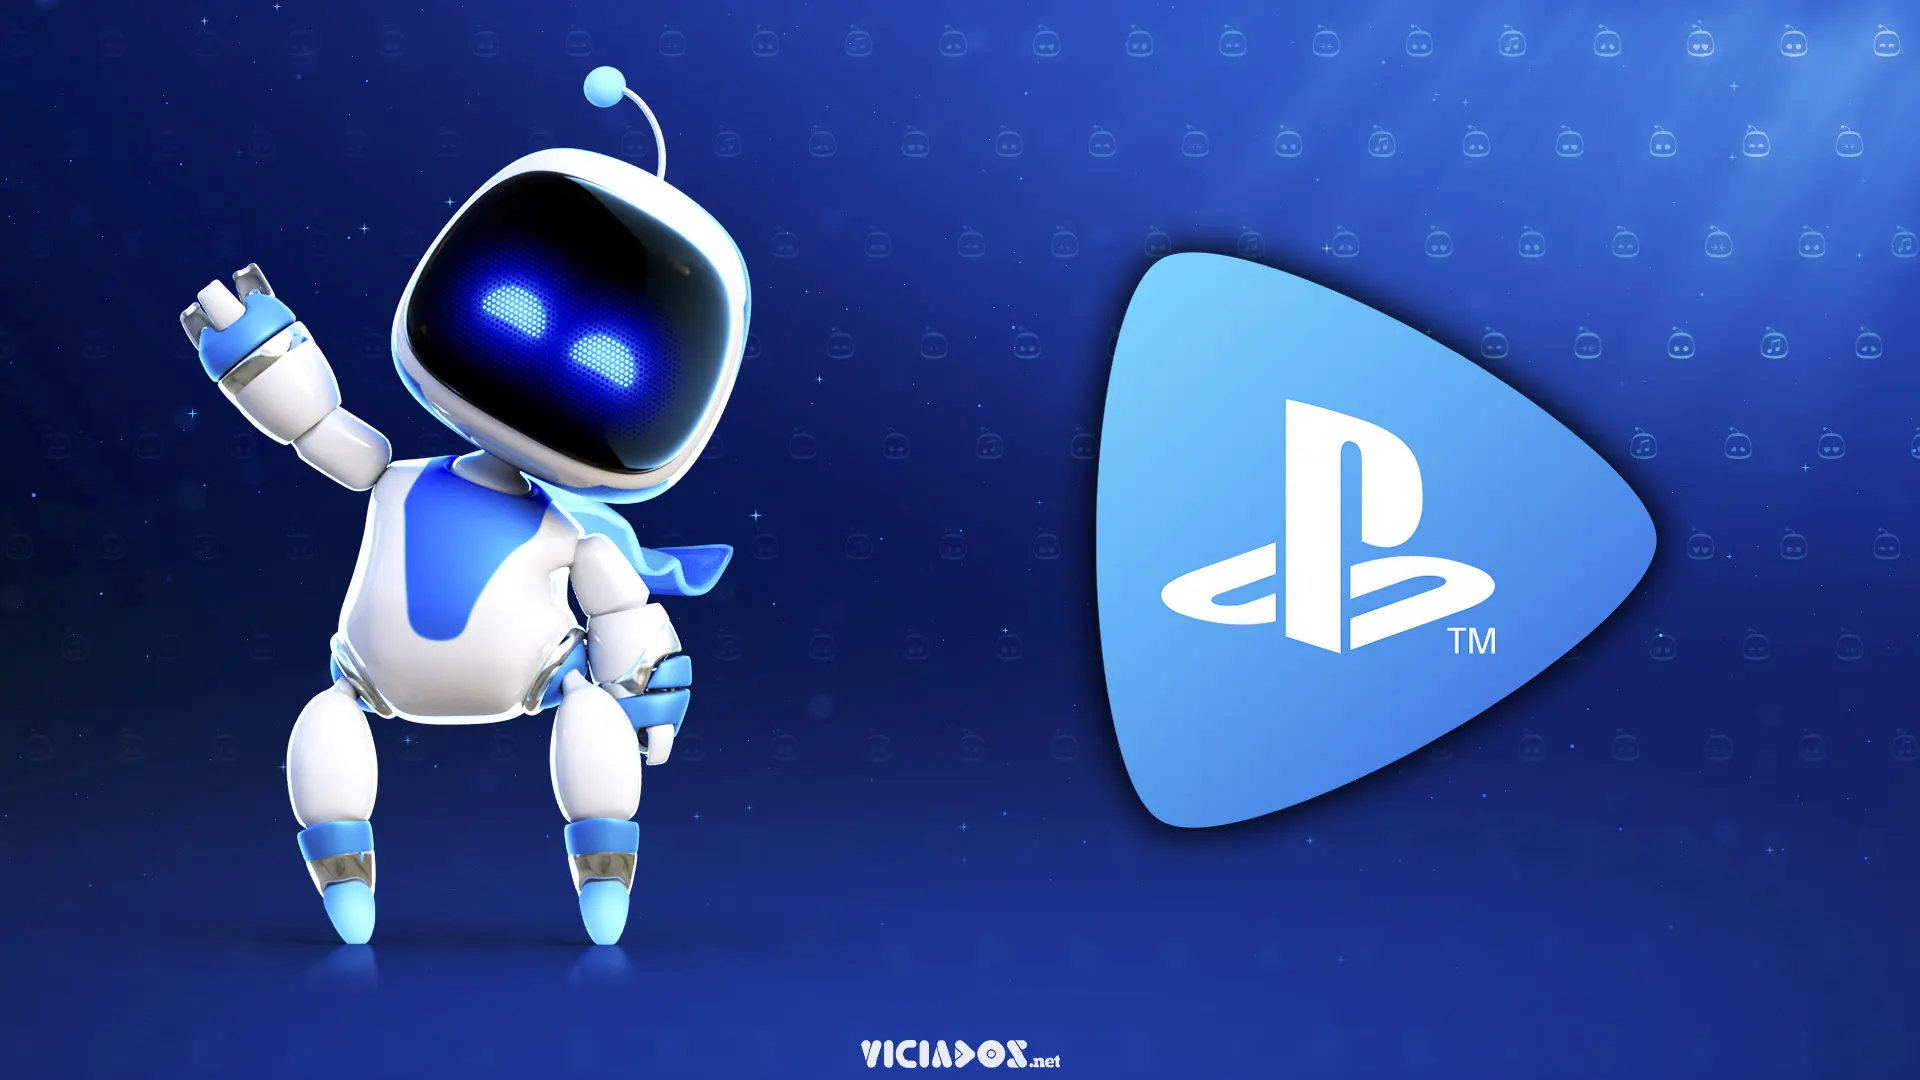 PlayStation 3 | Após 15 anos, grande jogo é desligado no PS3 2023 Viciados